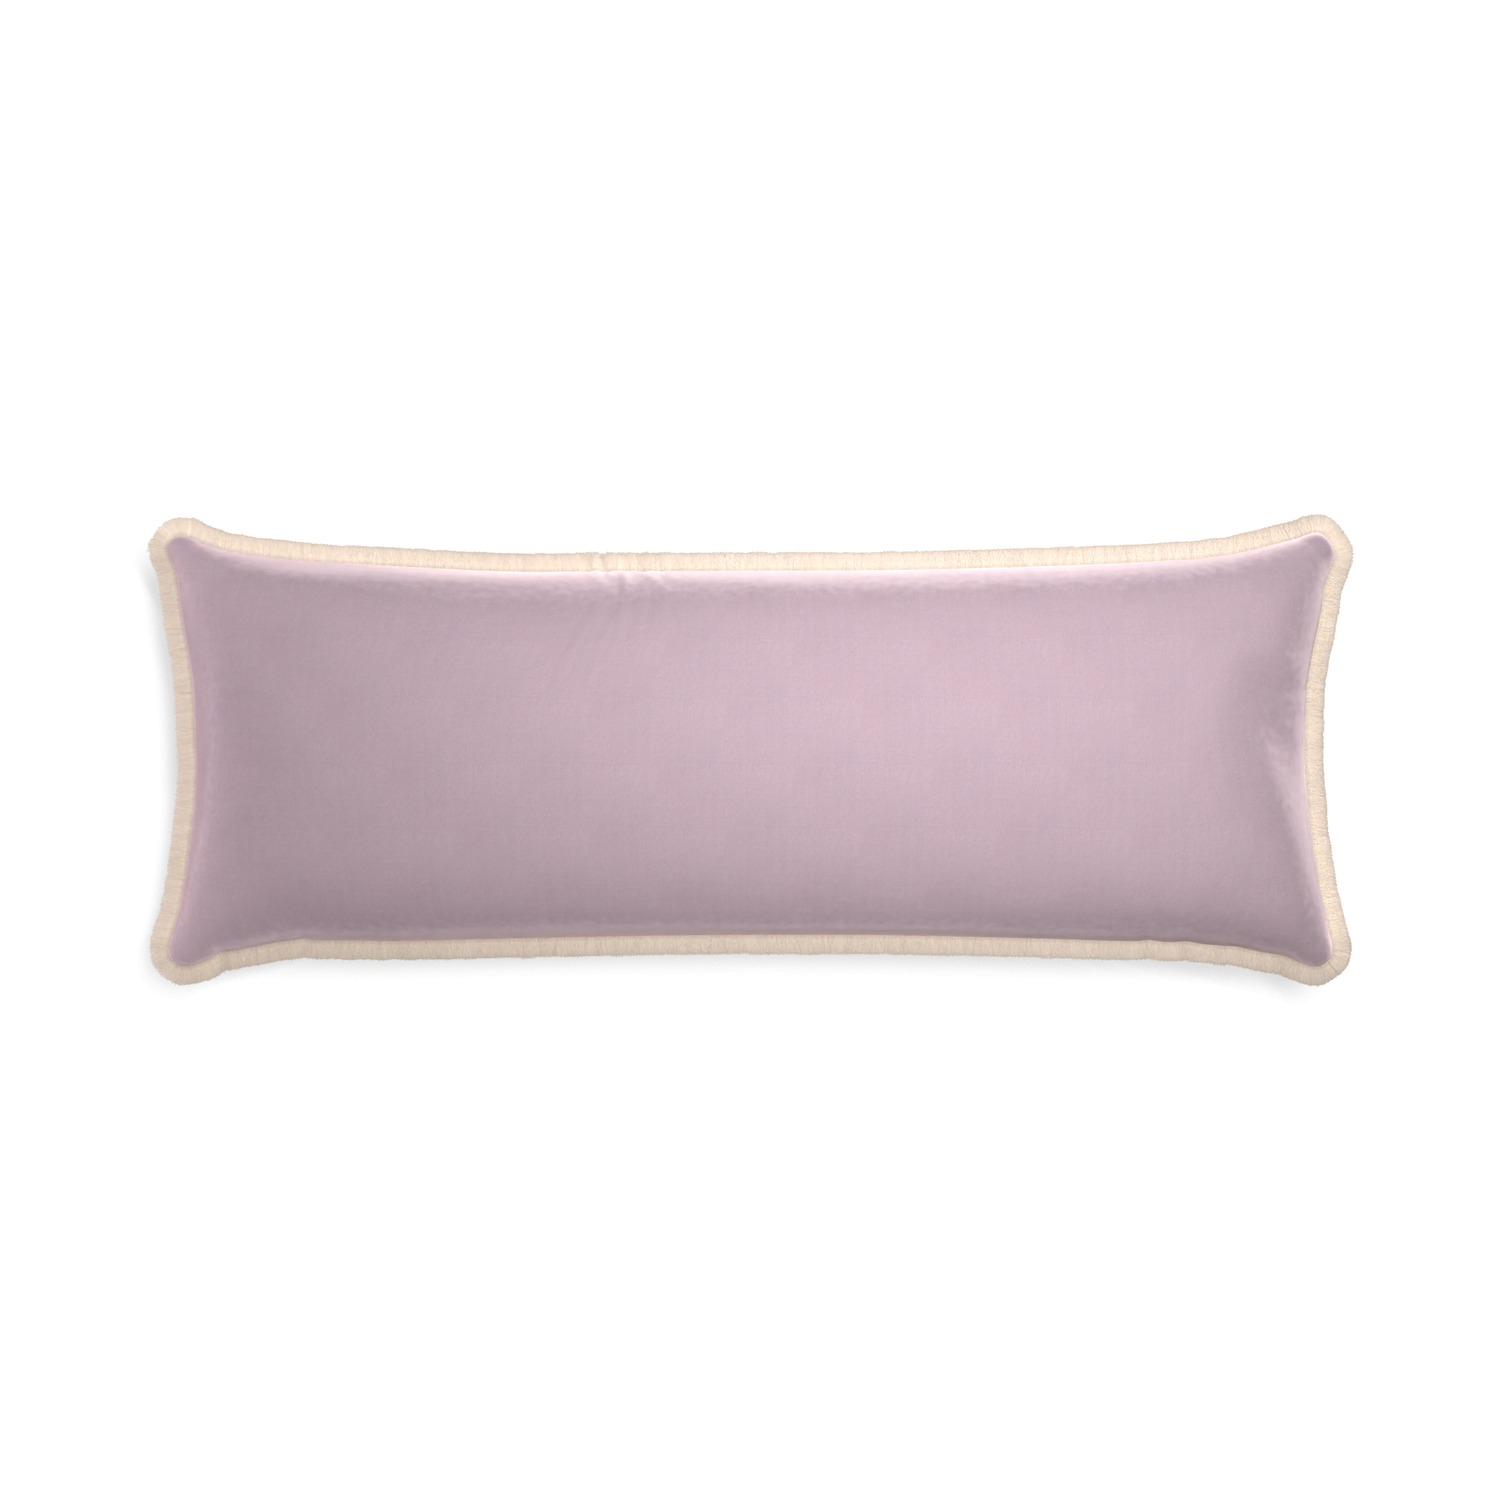 Xl-lumbar lilac velvet custom pillow with cream fringe on white background